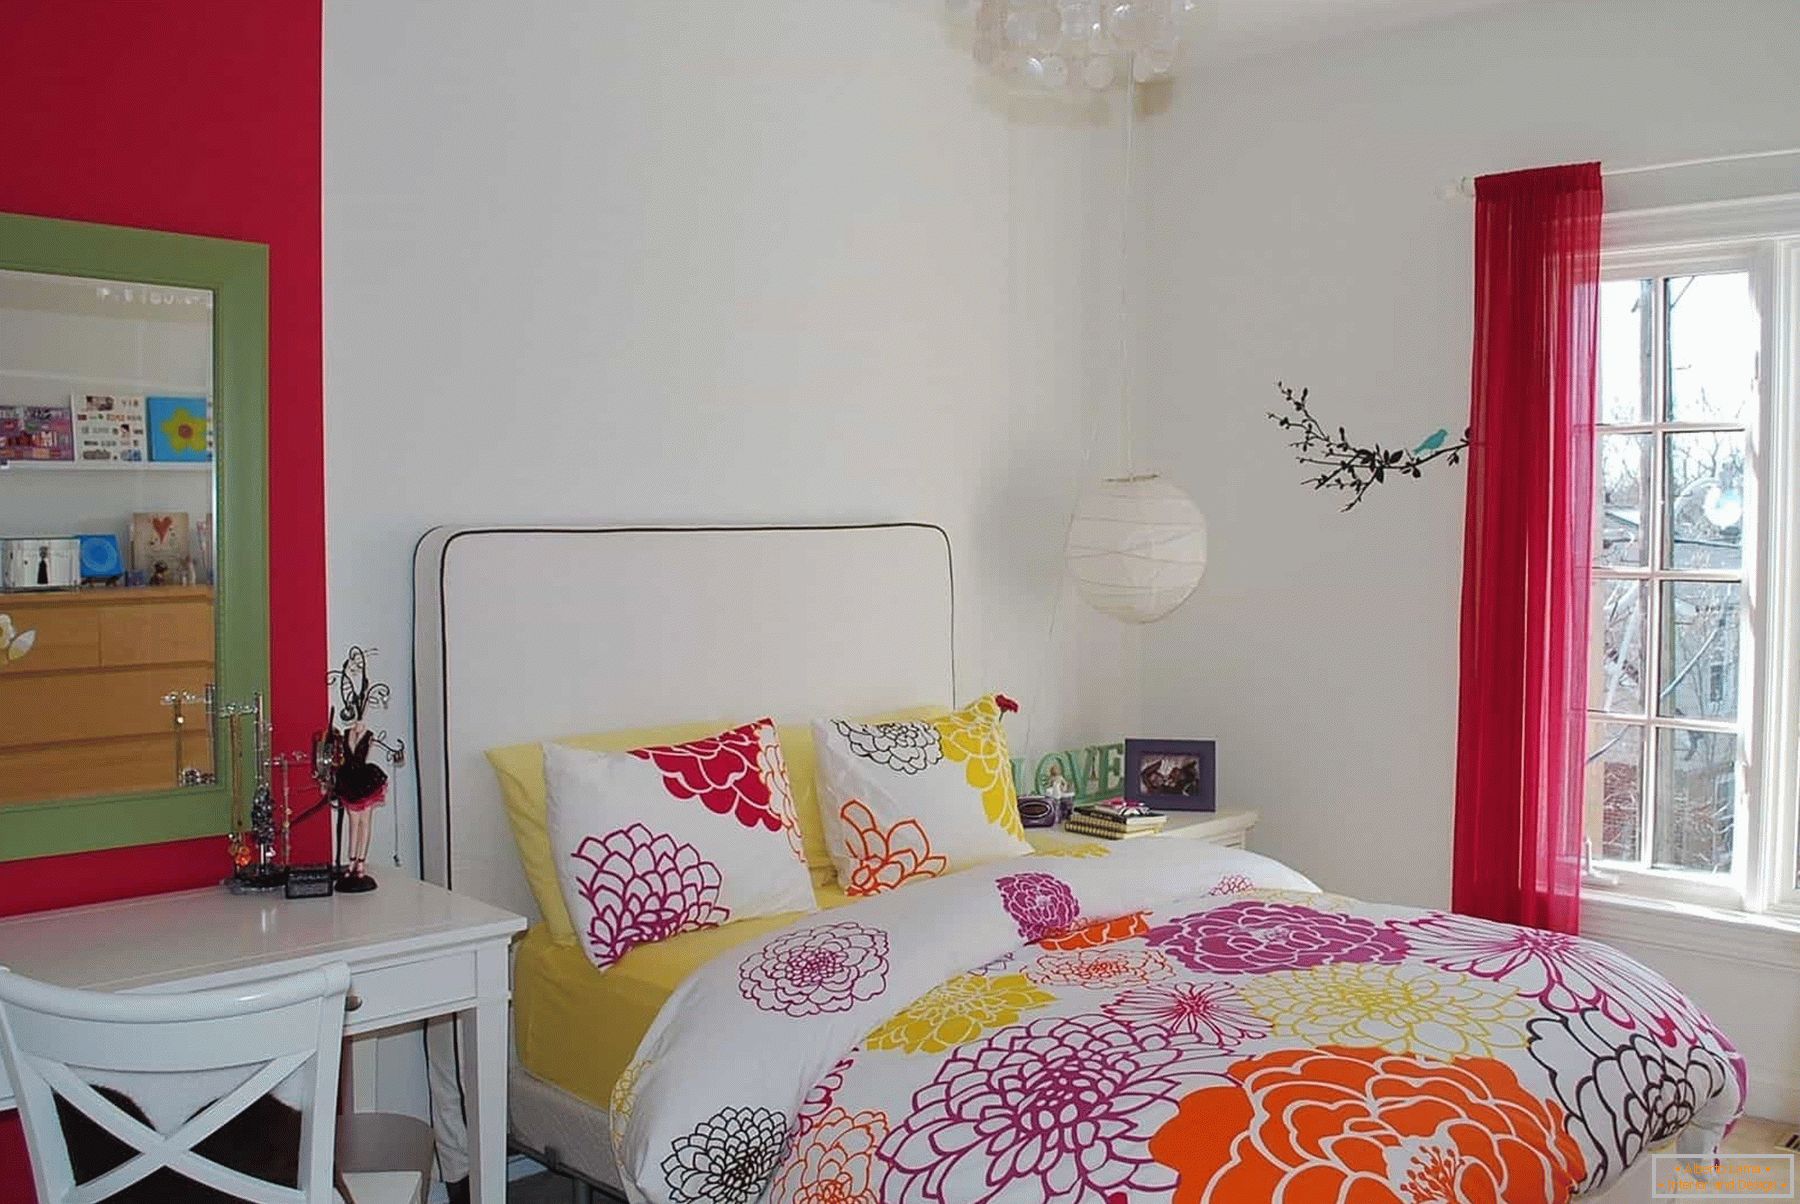 U beloj sobi tinejdžerke - obojene posteljine i dekorativnih elemenata